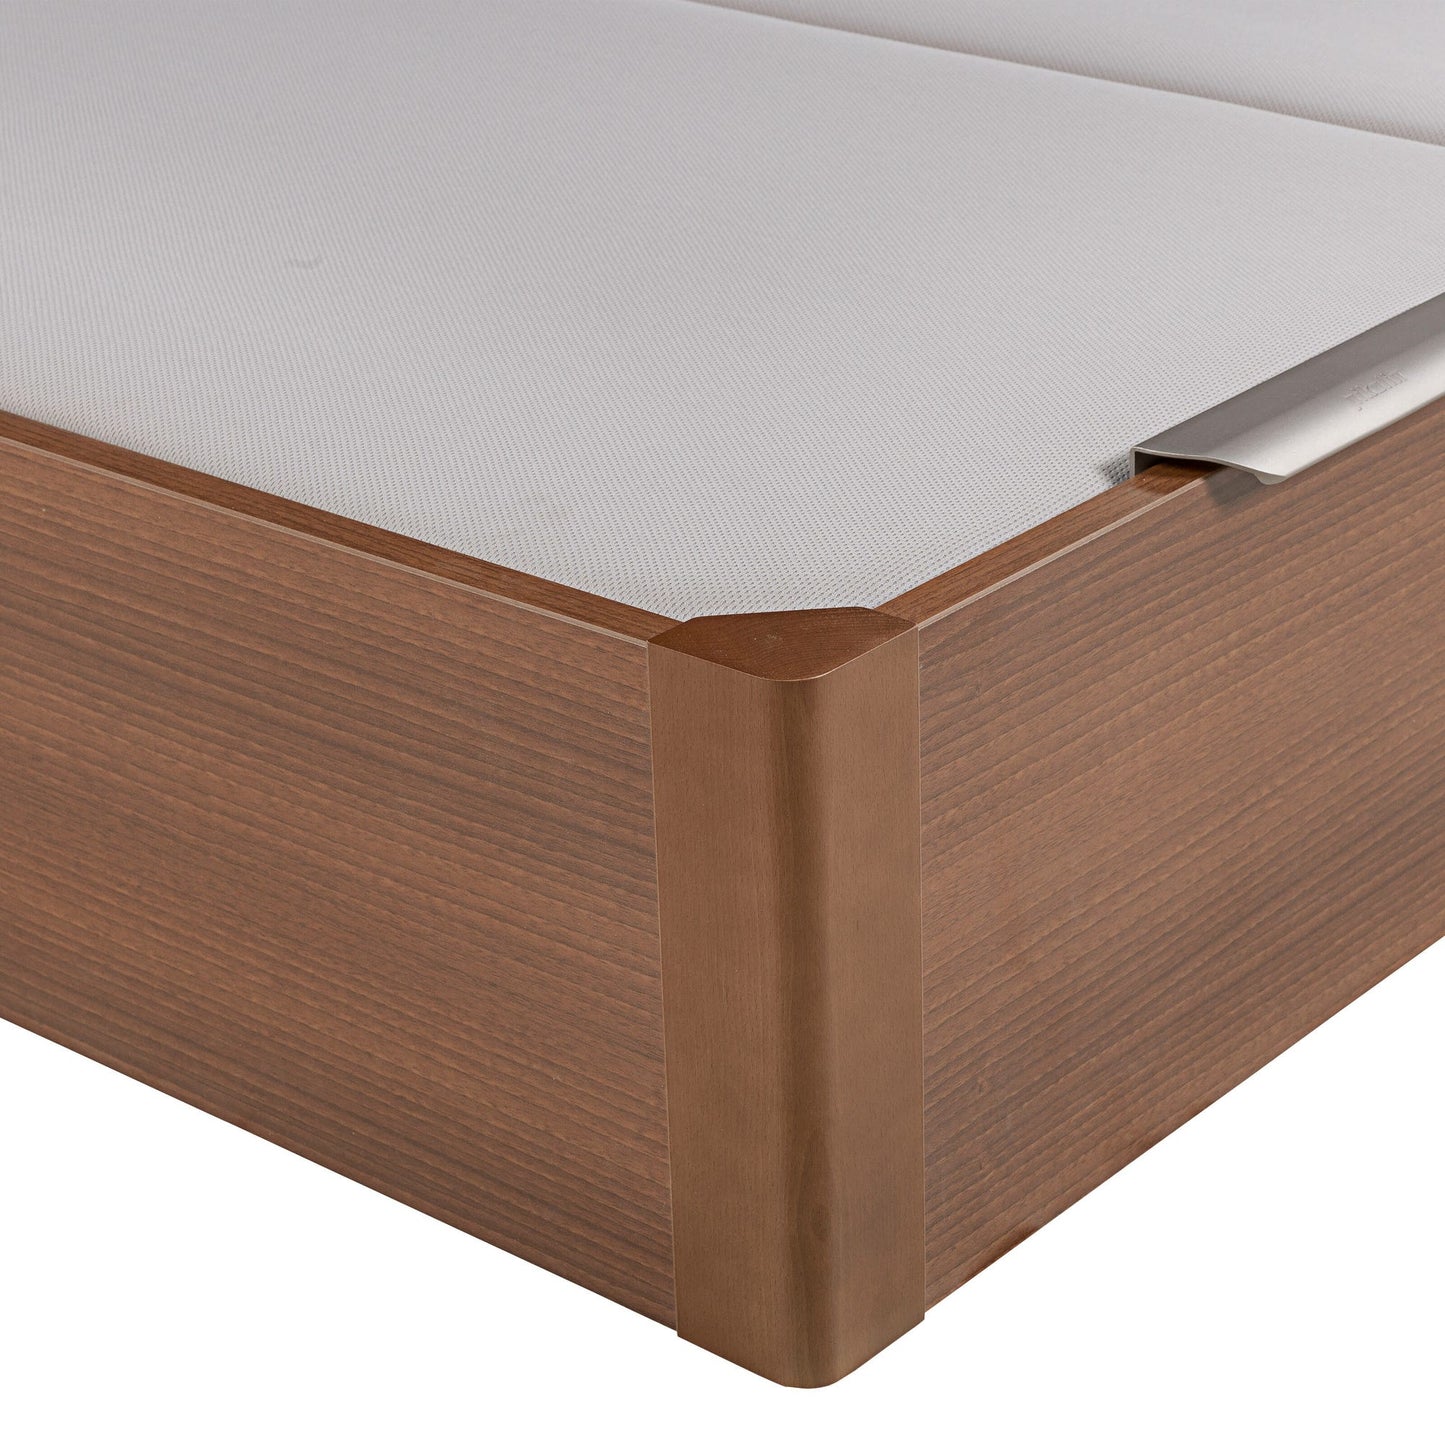 Canapé abatible de madera de tapa doble de color cerezo - DESIGN - 180x190